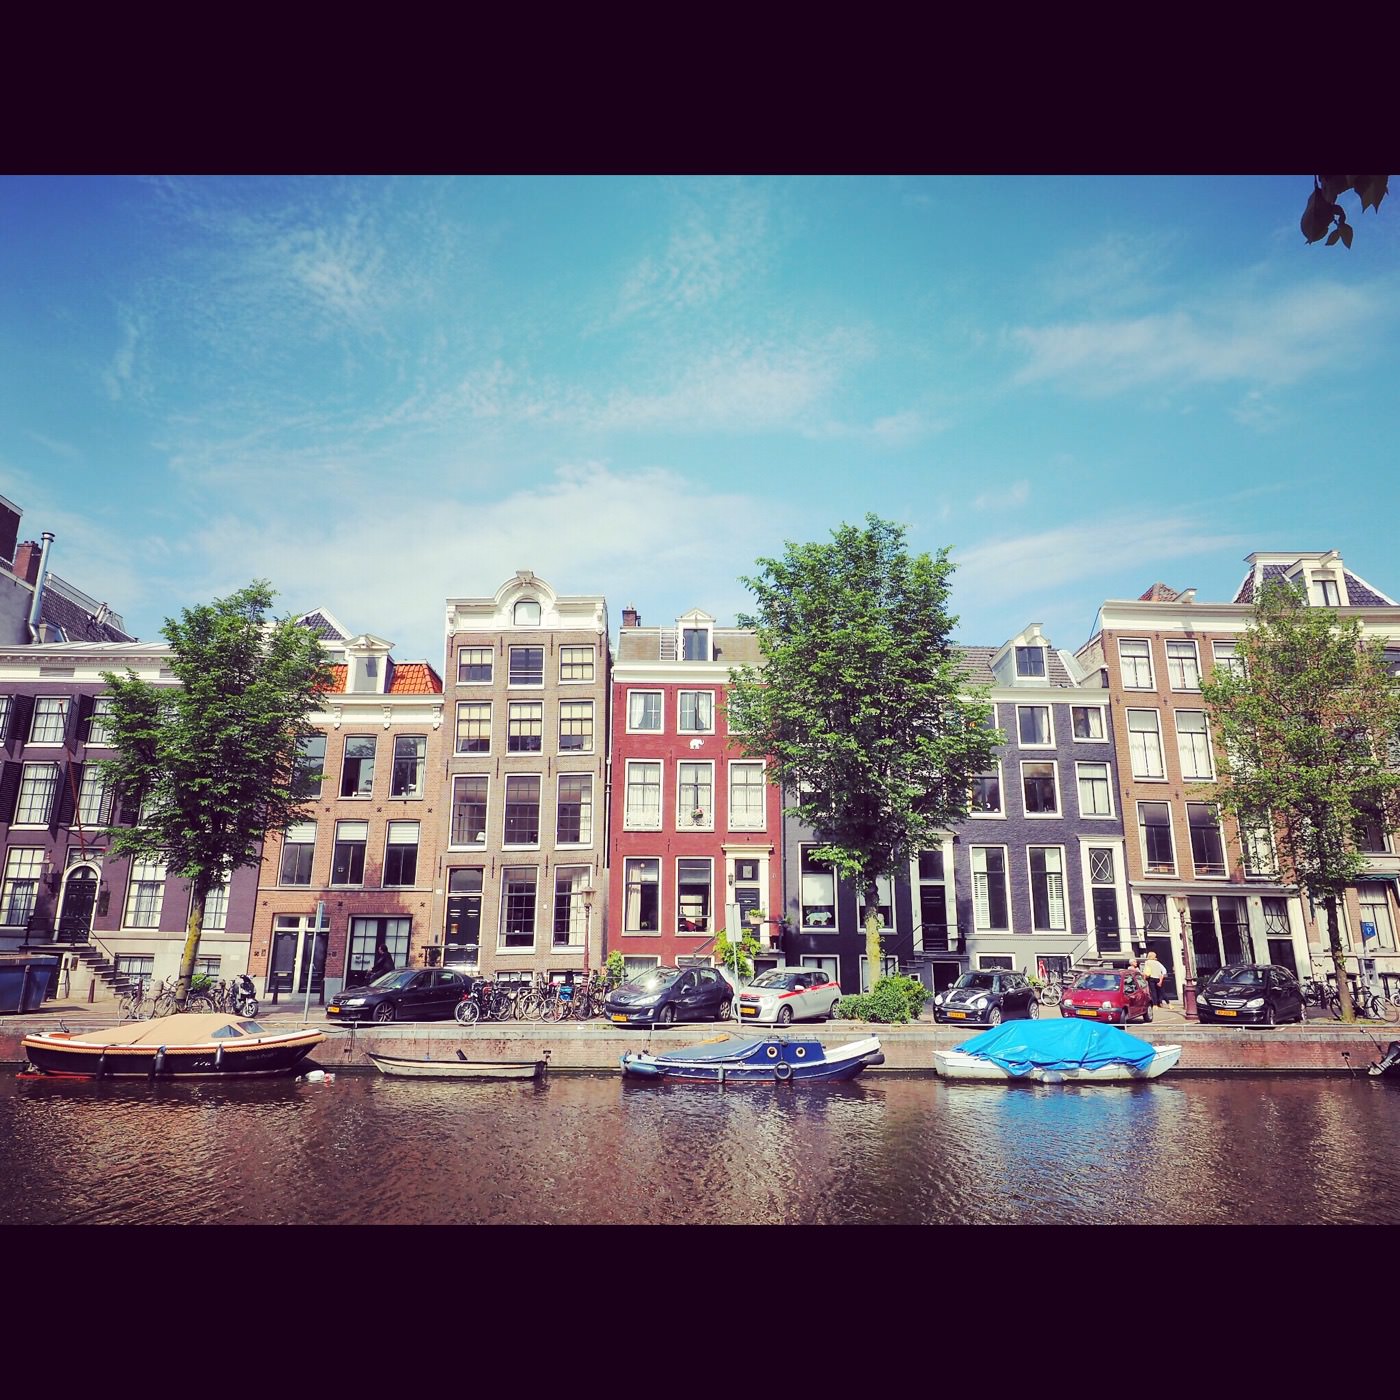 2016 荷蘭 阿姆斯特丹 旅行途中 - 一口冒險 Bitesized Adventure